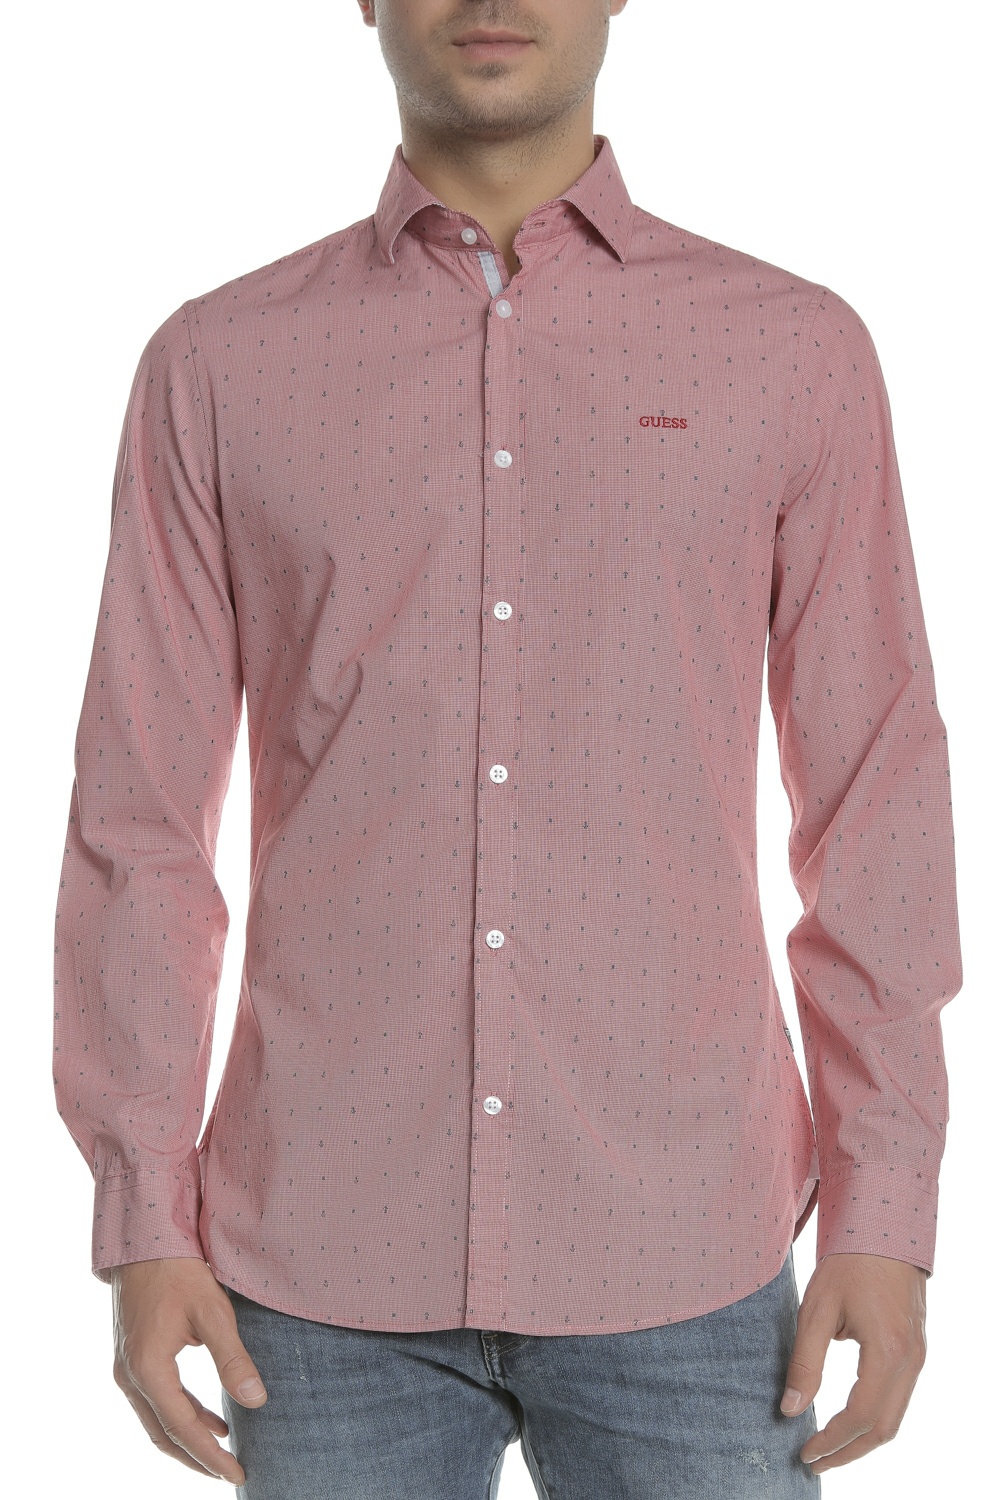 Ανδρικά/Ρούχα/Πουκάμισα/Μακρυμάνικα GUESS - Ανδρικό μακρυμάνικο πουκάμισο GUESS ροζ με print